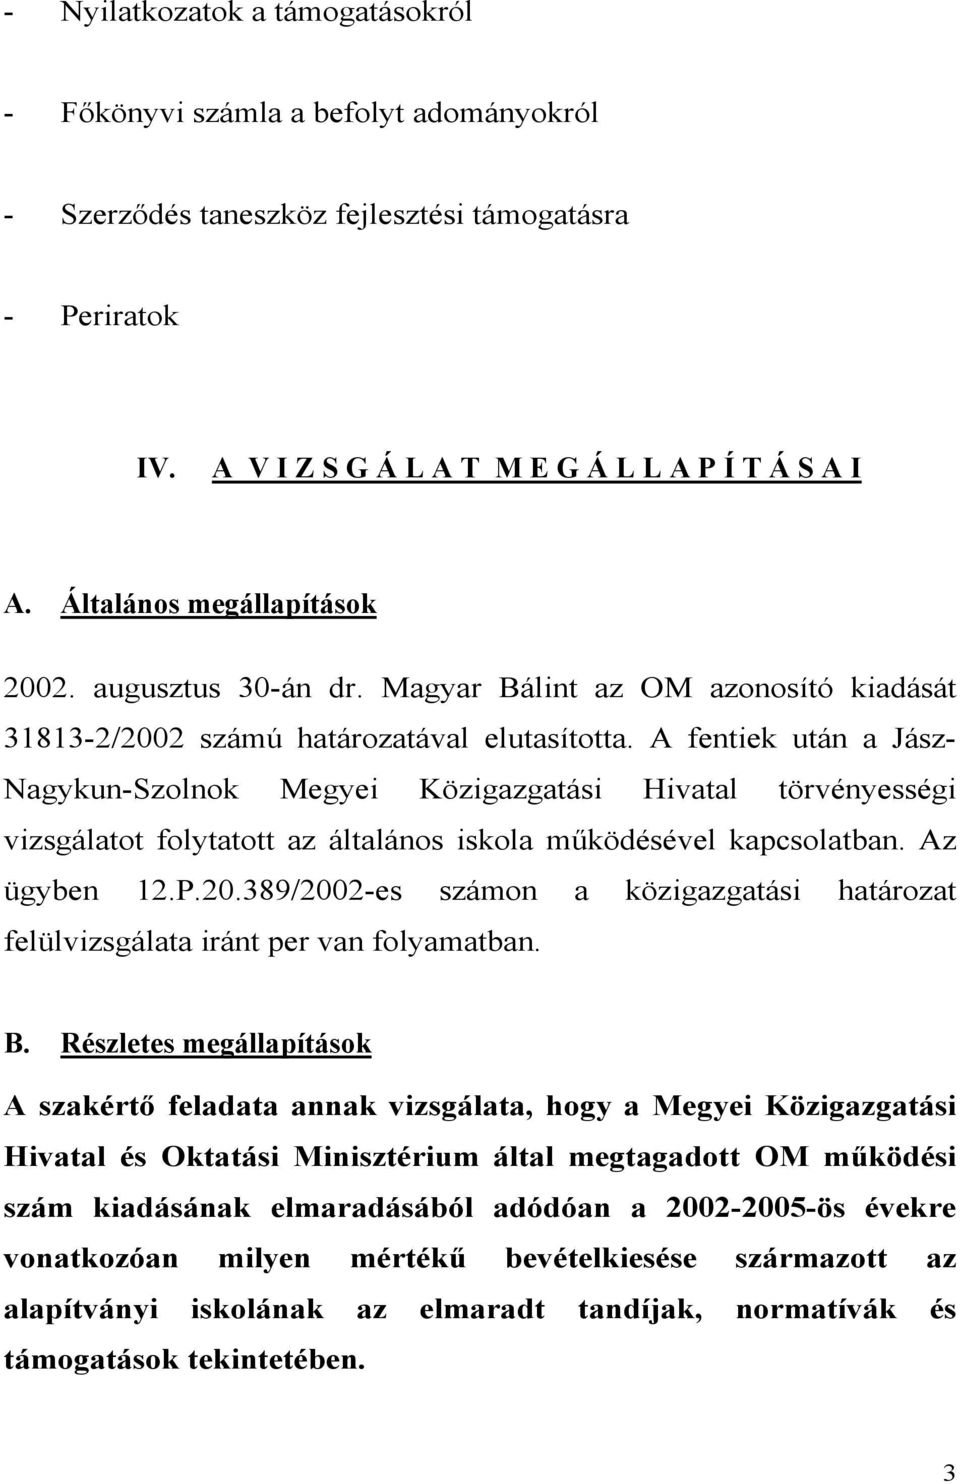 A fentiek után a Jász- Nagykun-Szolnok Megyei Közigazgatási Hivatal törvényességi vizsgálatot folytatott az általános iskola működésével kapcsolatban. Az ügyben 12.P.20.